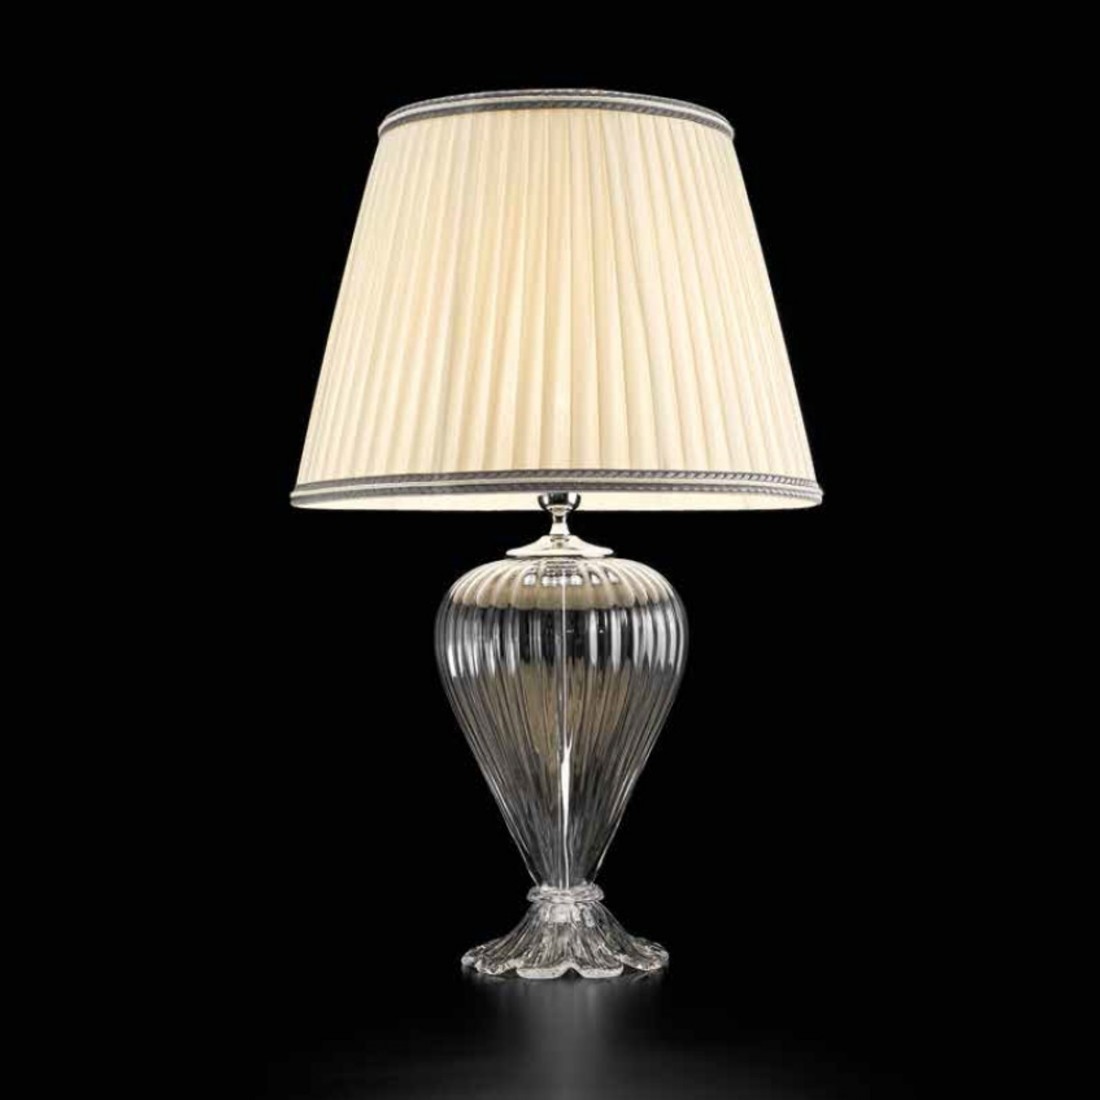 Klassischer und eleganter Lampenschirm für jeden Stil